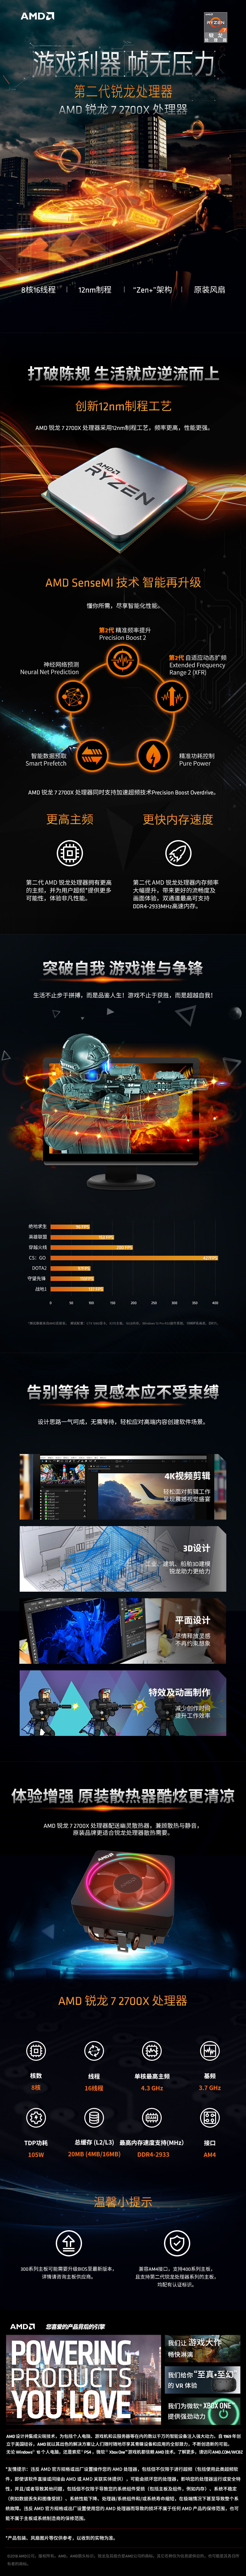 AMD 锐龙 7 2700X 处理器 (R7) 8核16线程...-京东